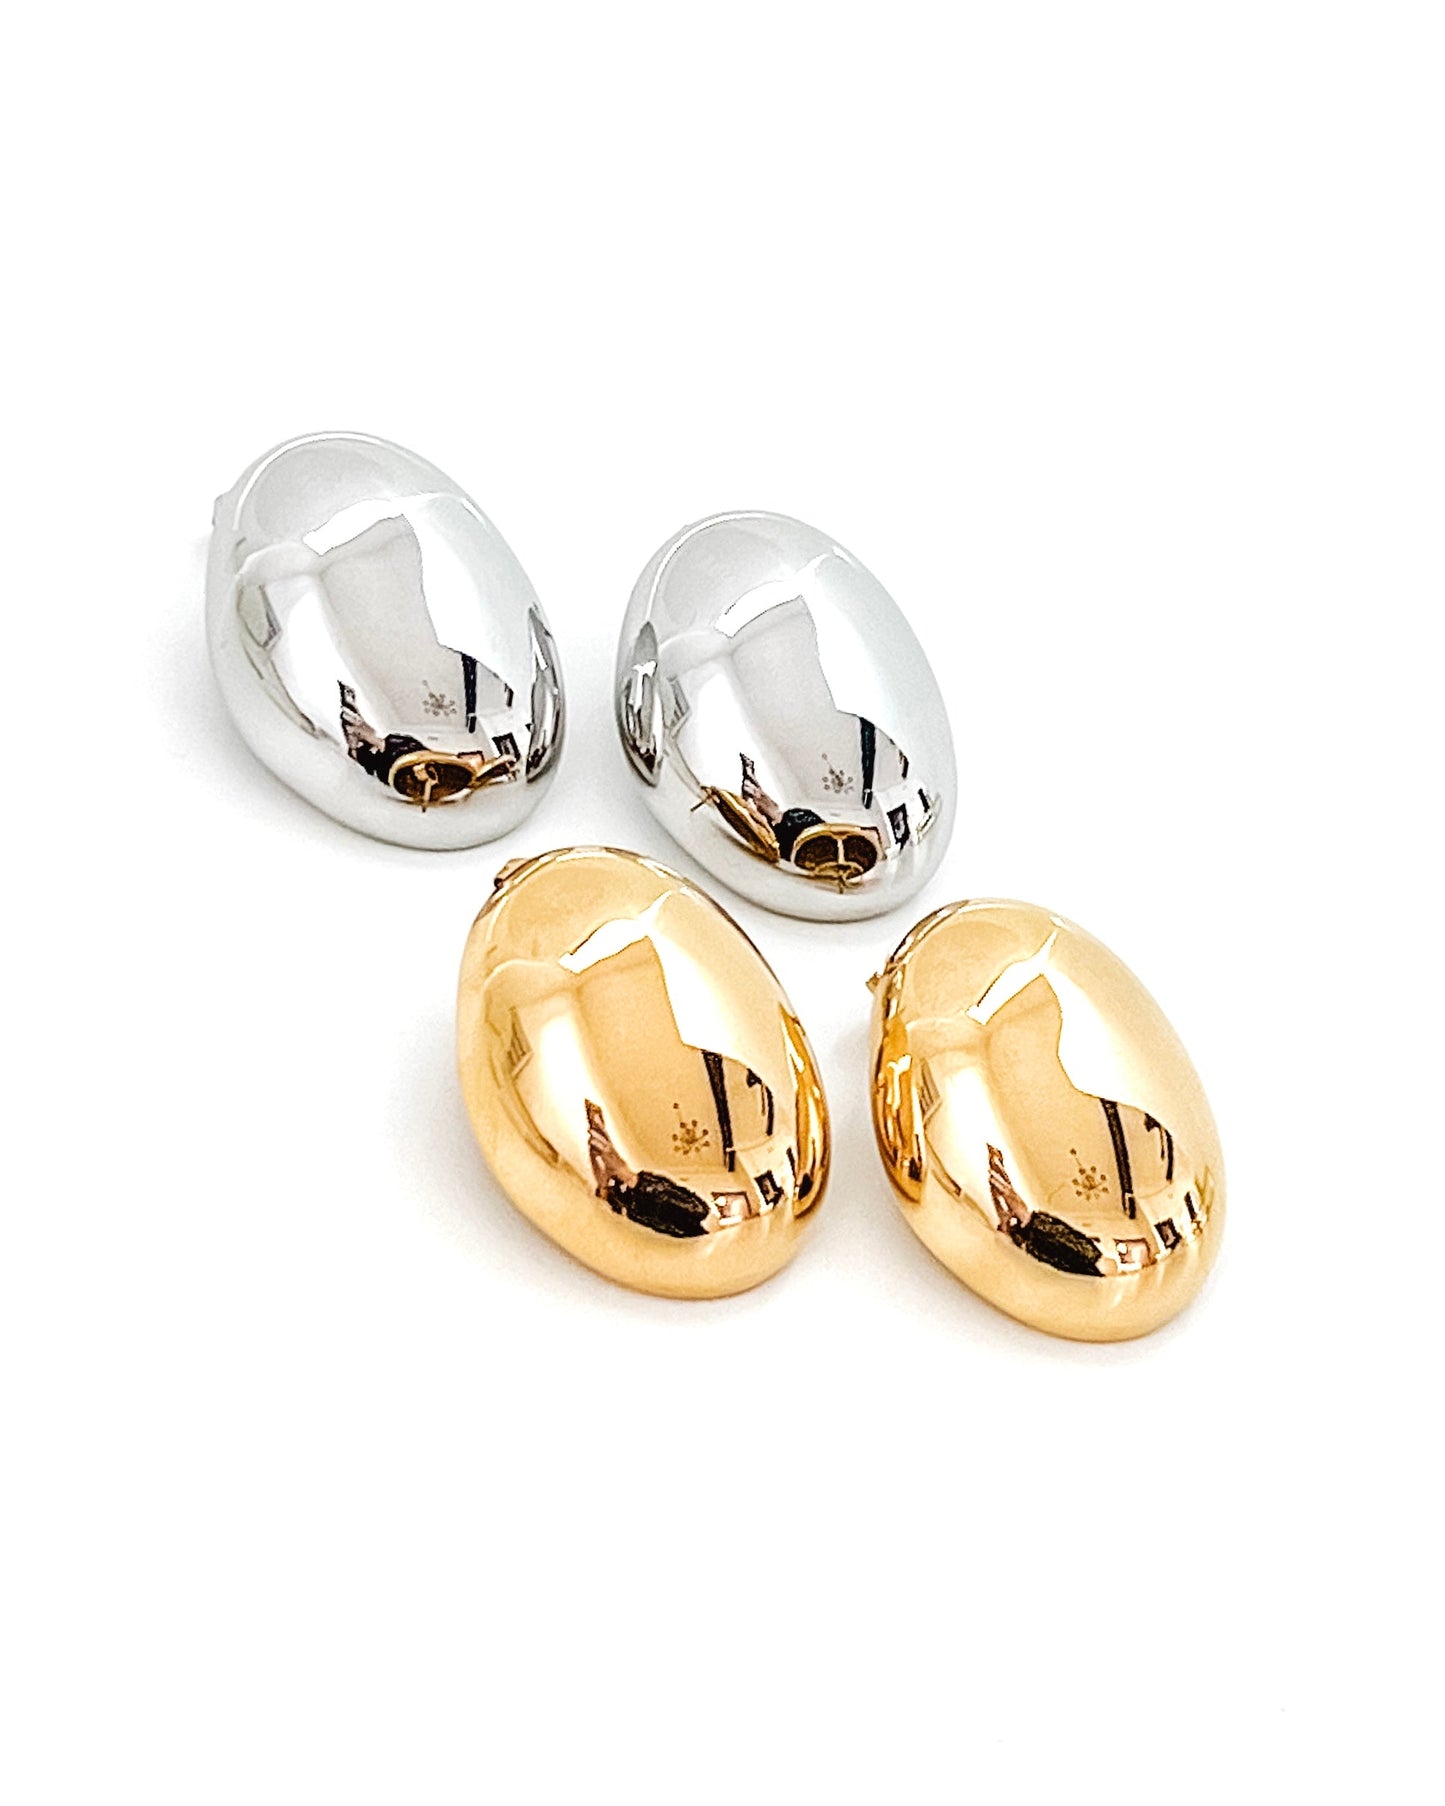 Estafane Statement Oval Stud Earrings - Gold